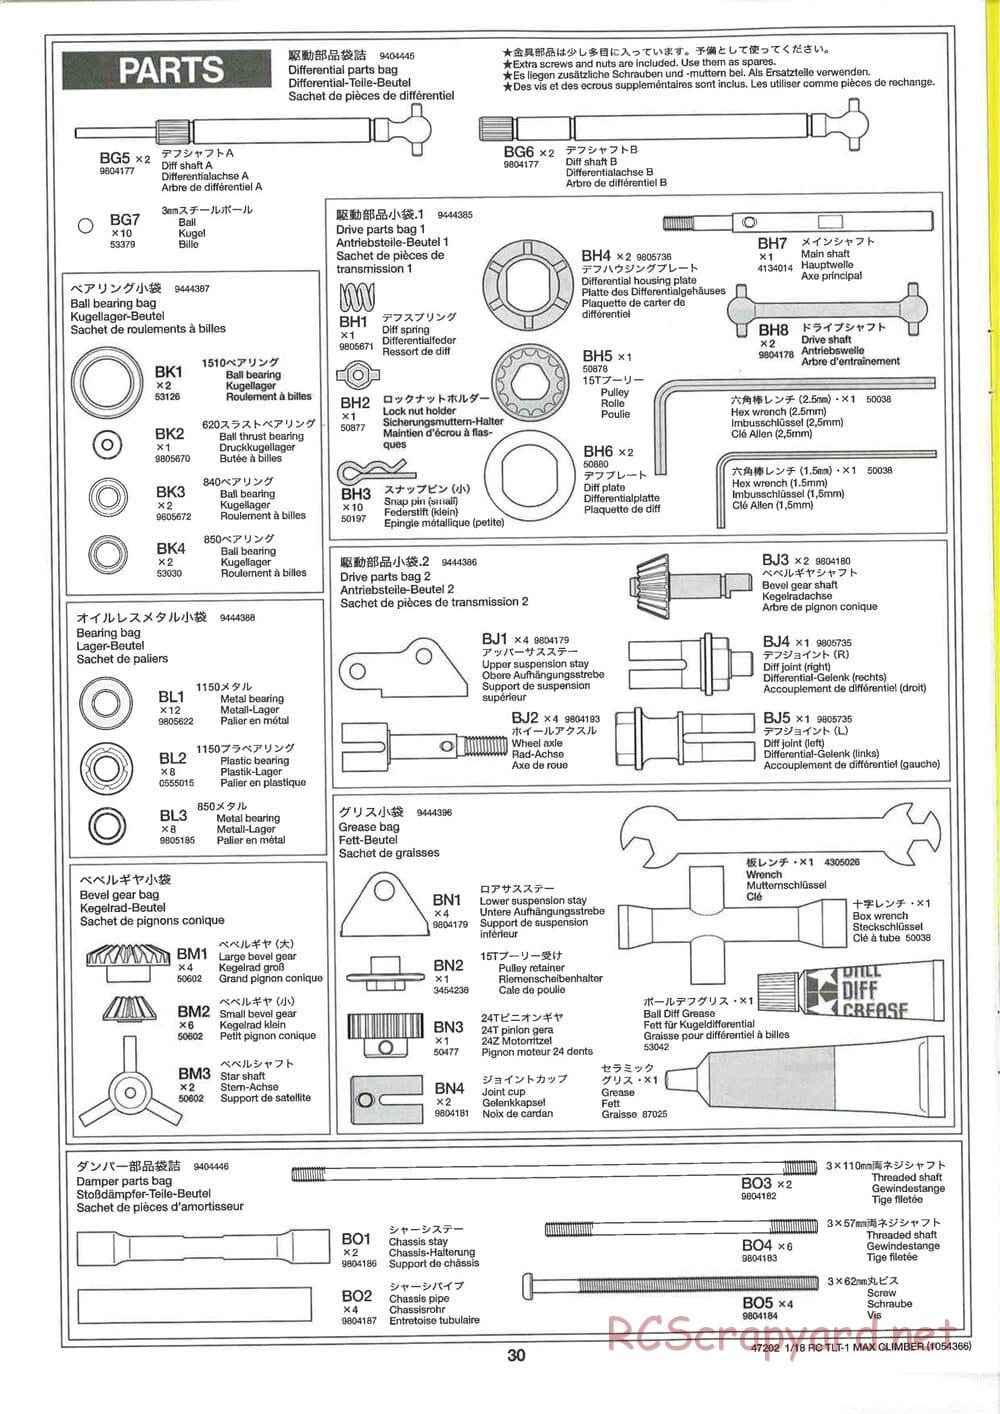 Tamiya - Max Climber - TLT-1 Chassis - Manual - Page 30